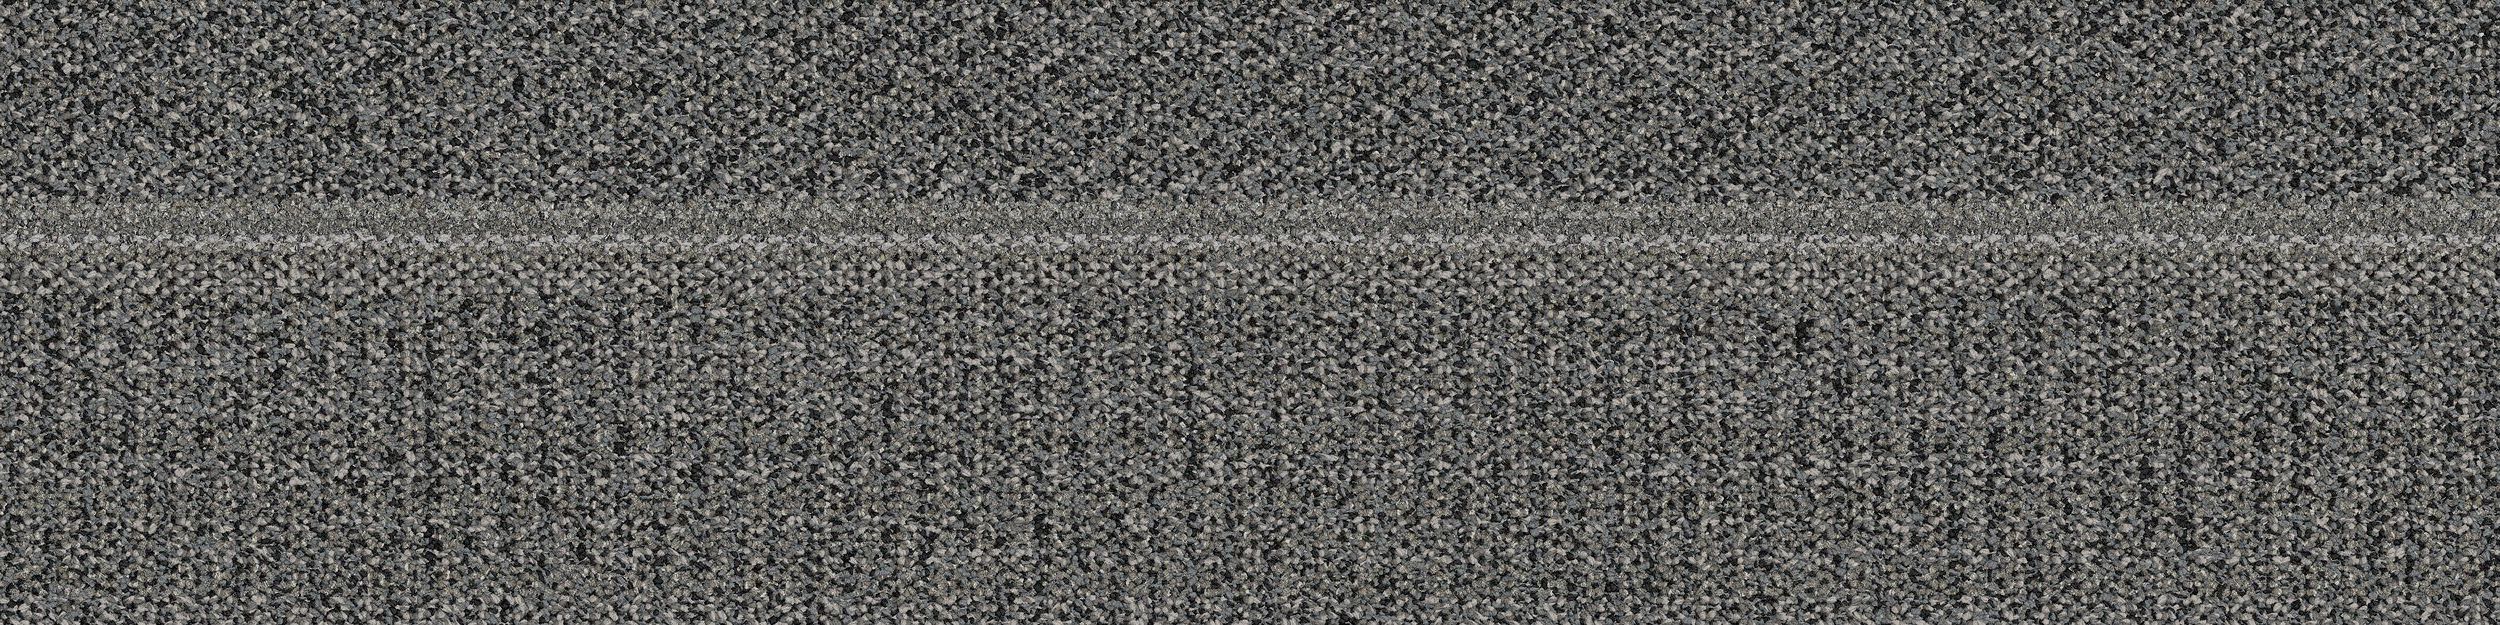 Simple Sash Carpet Tile In Ash número de imagen 2